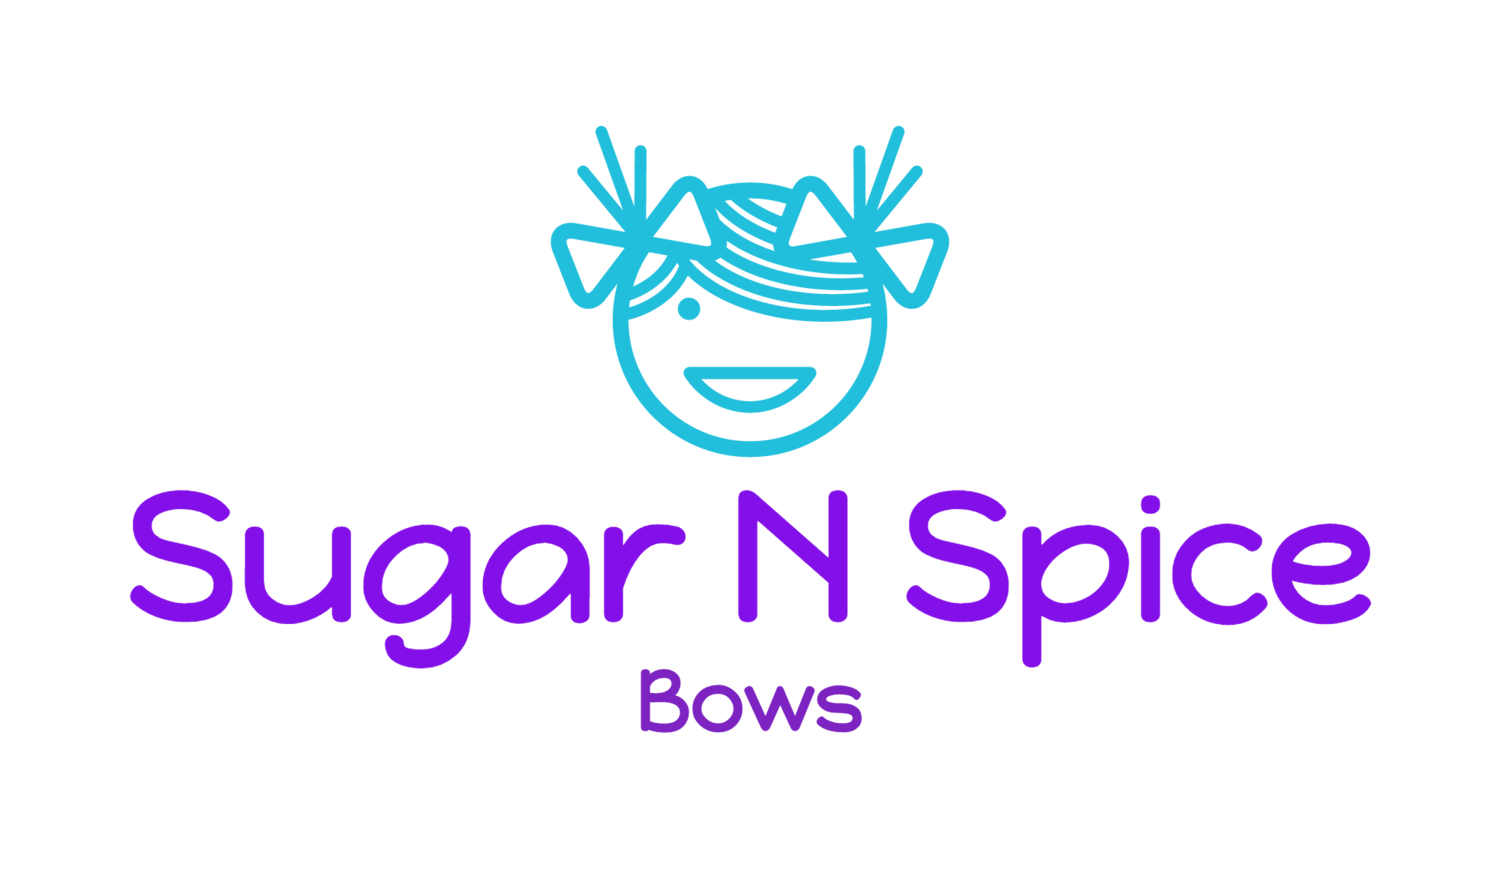 Sugar n Spice Bows